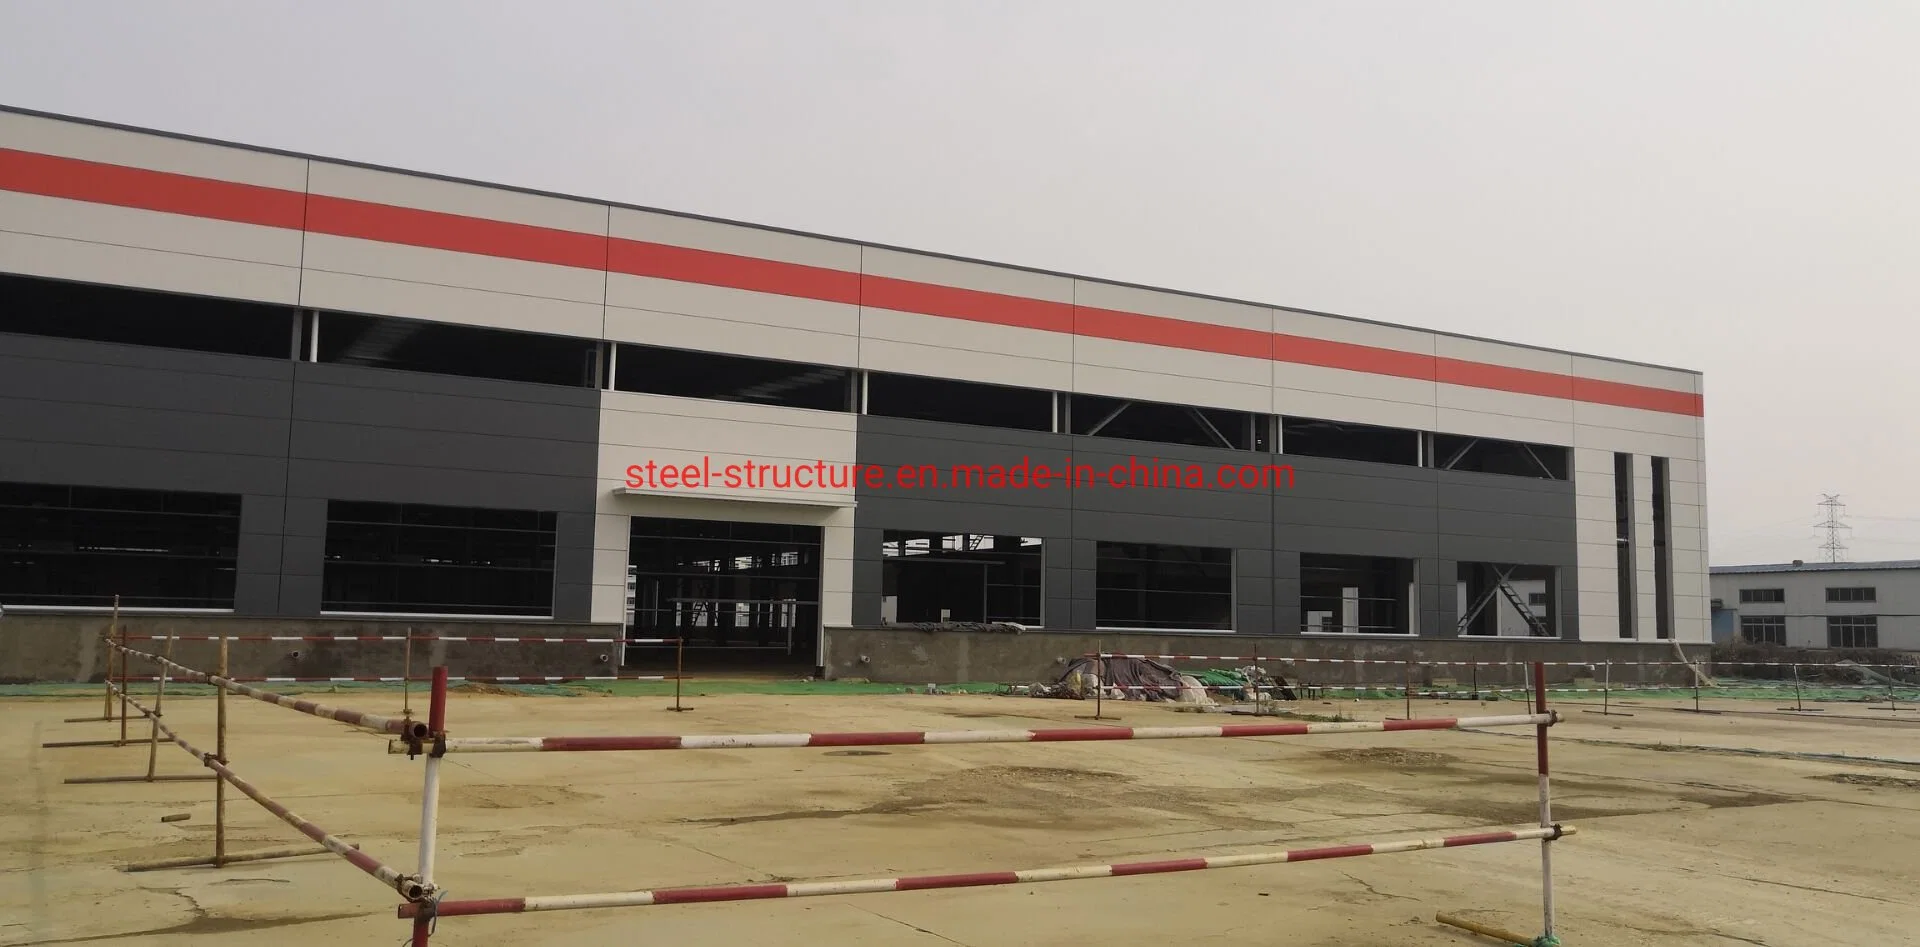 Estructura de acero diseñada prefabricados personalizados almacén taller Hangar Showroom Edificio supermercado